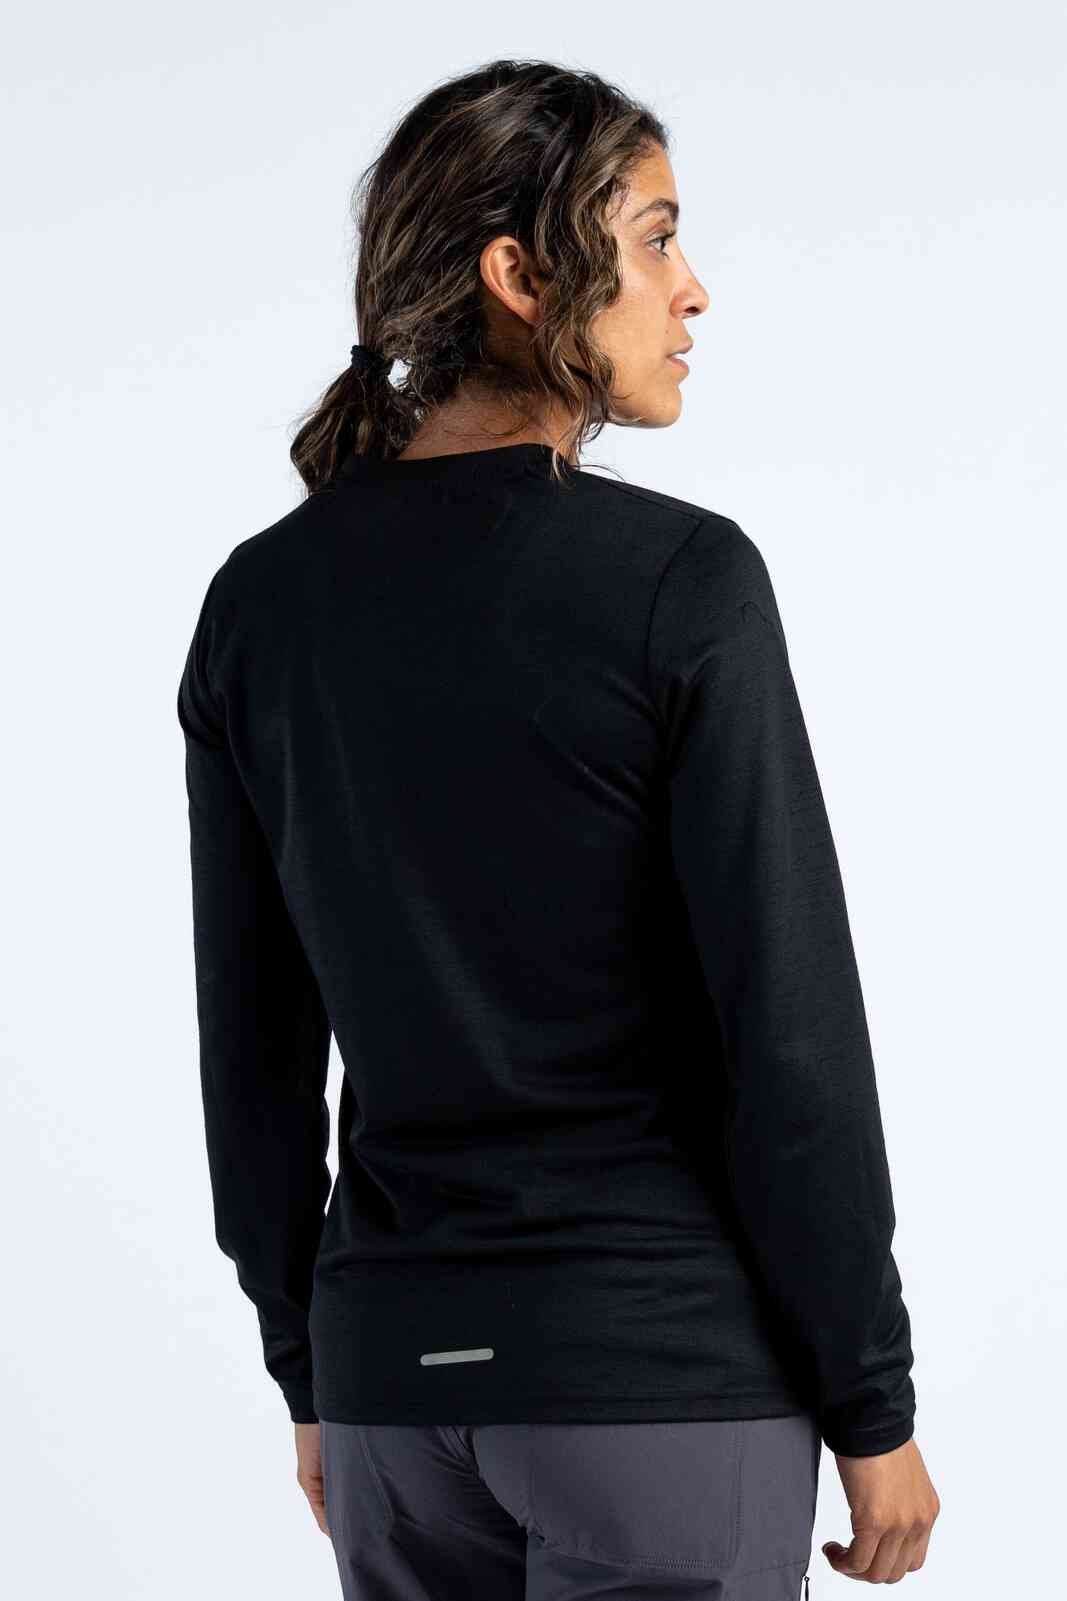 Women's Merino Wool Long Sleeve MTB Jersey - Back View